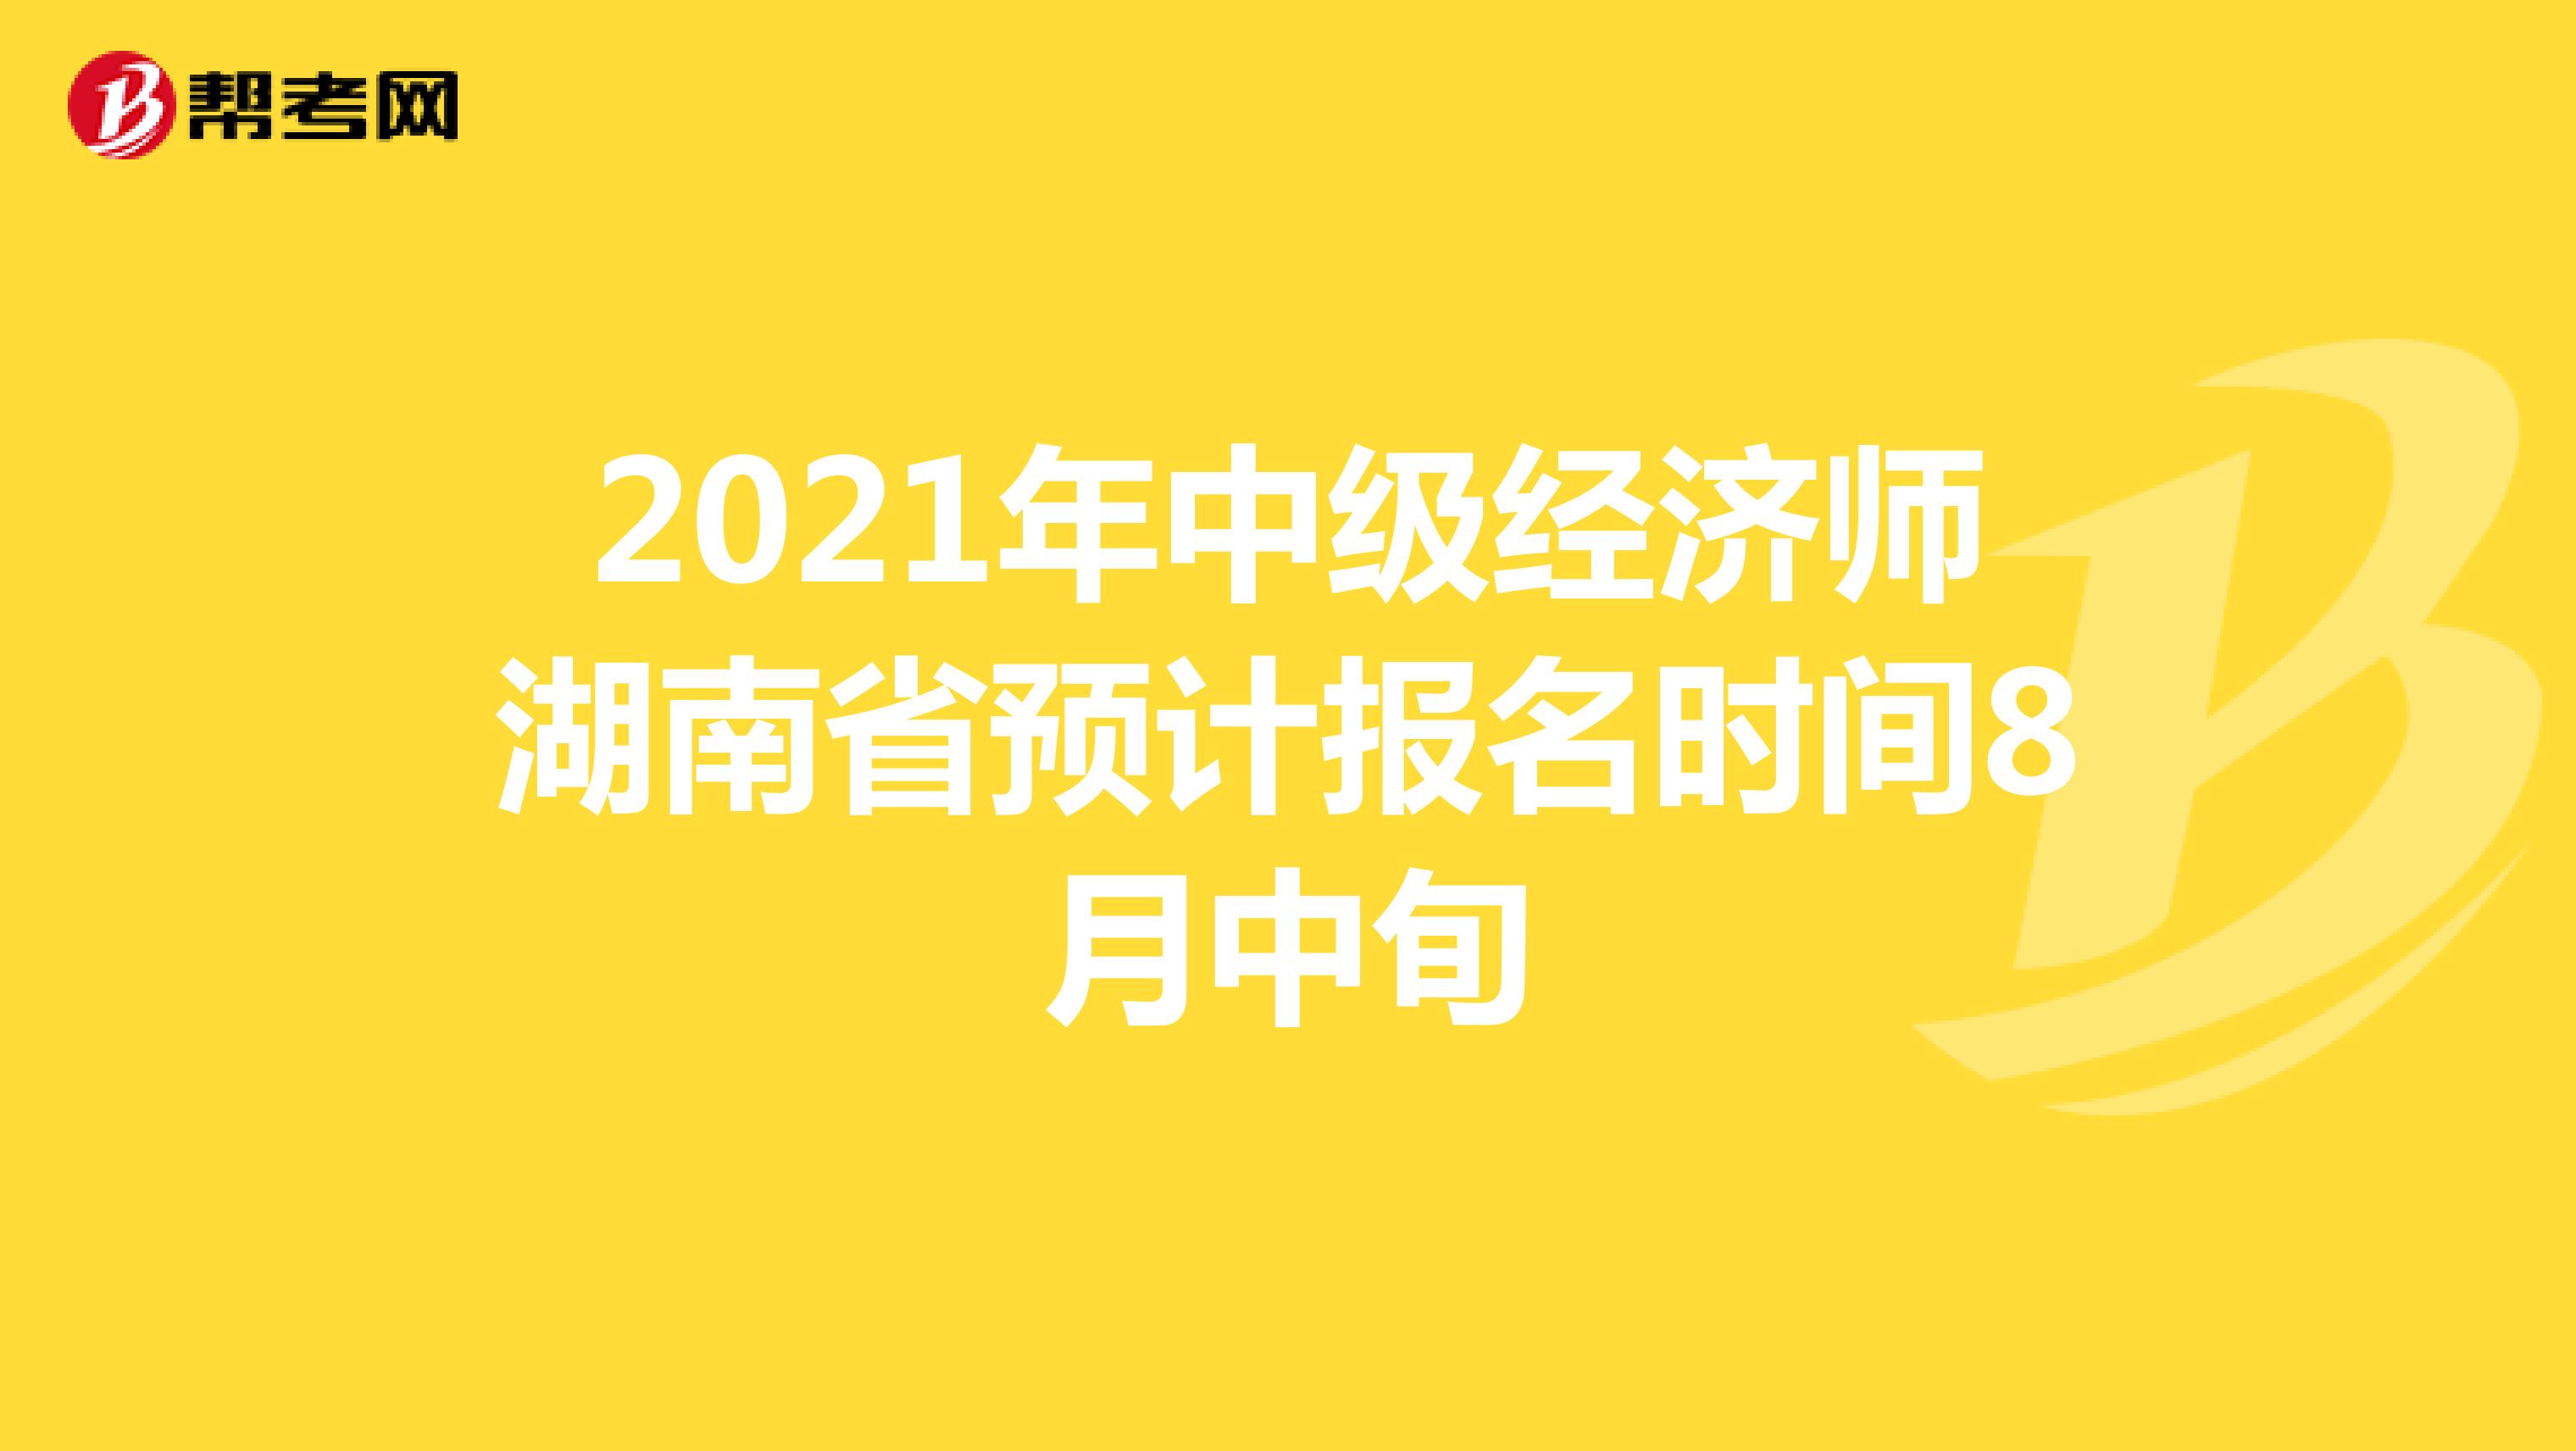 2021年中级经济师湖南省预计报名时间8月中旬